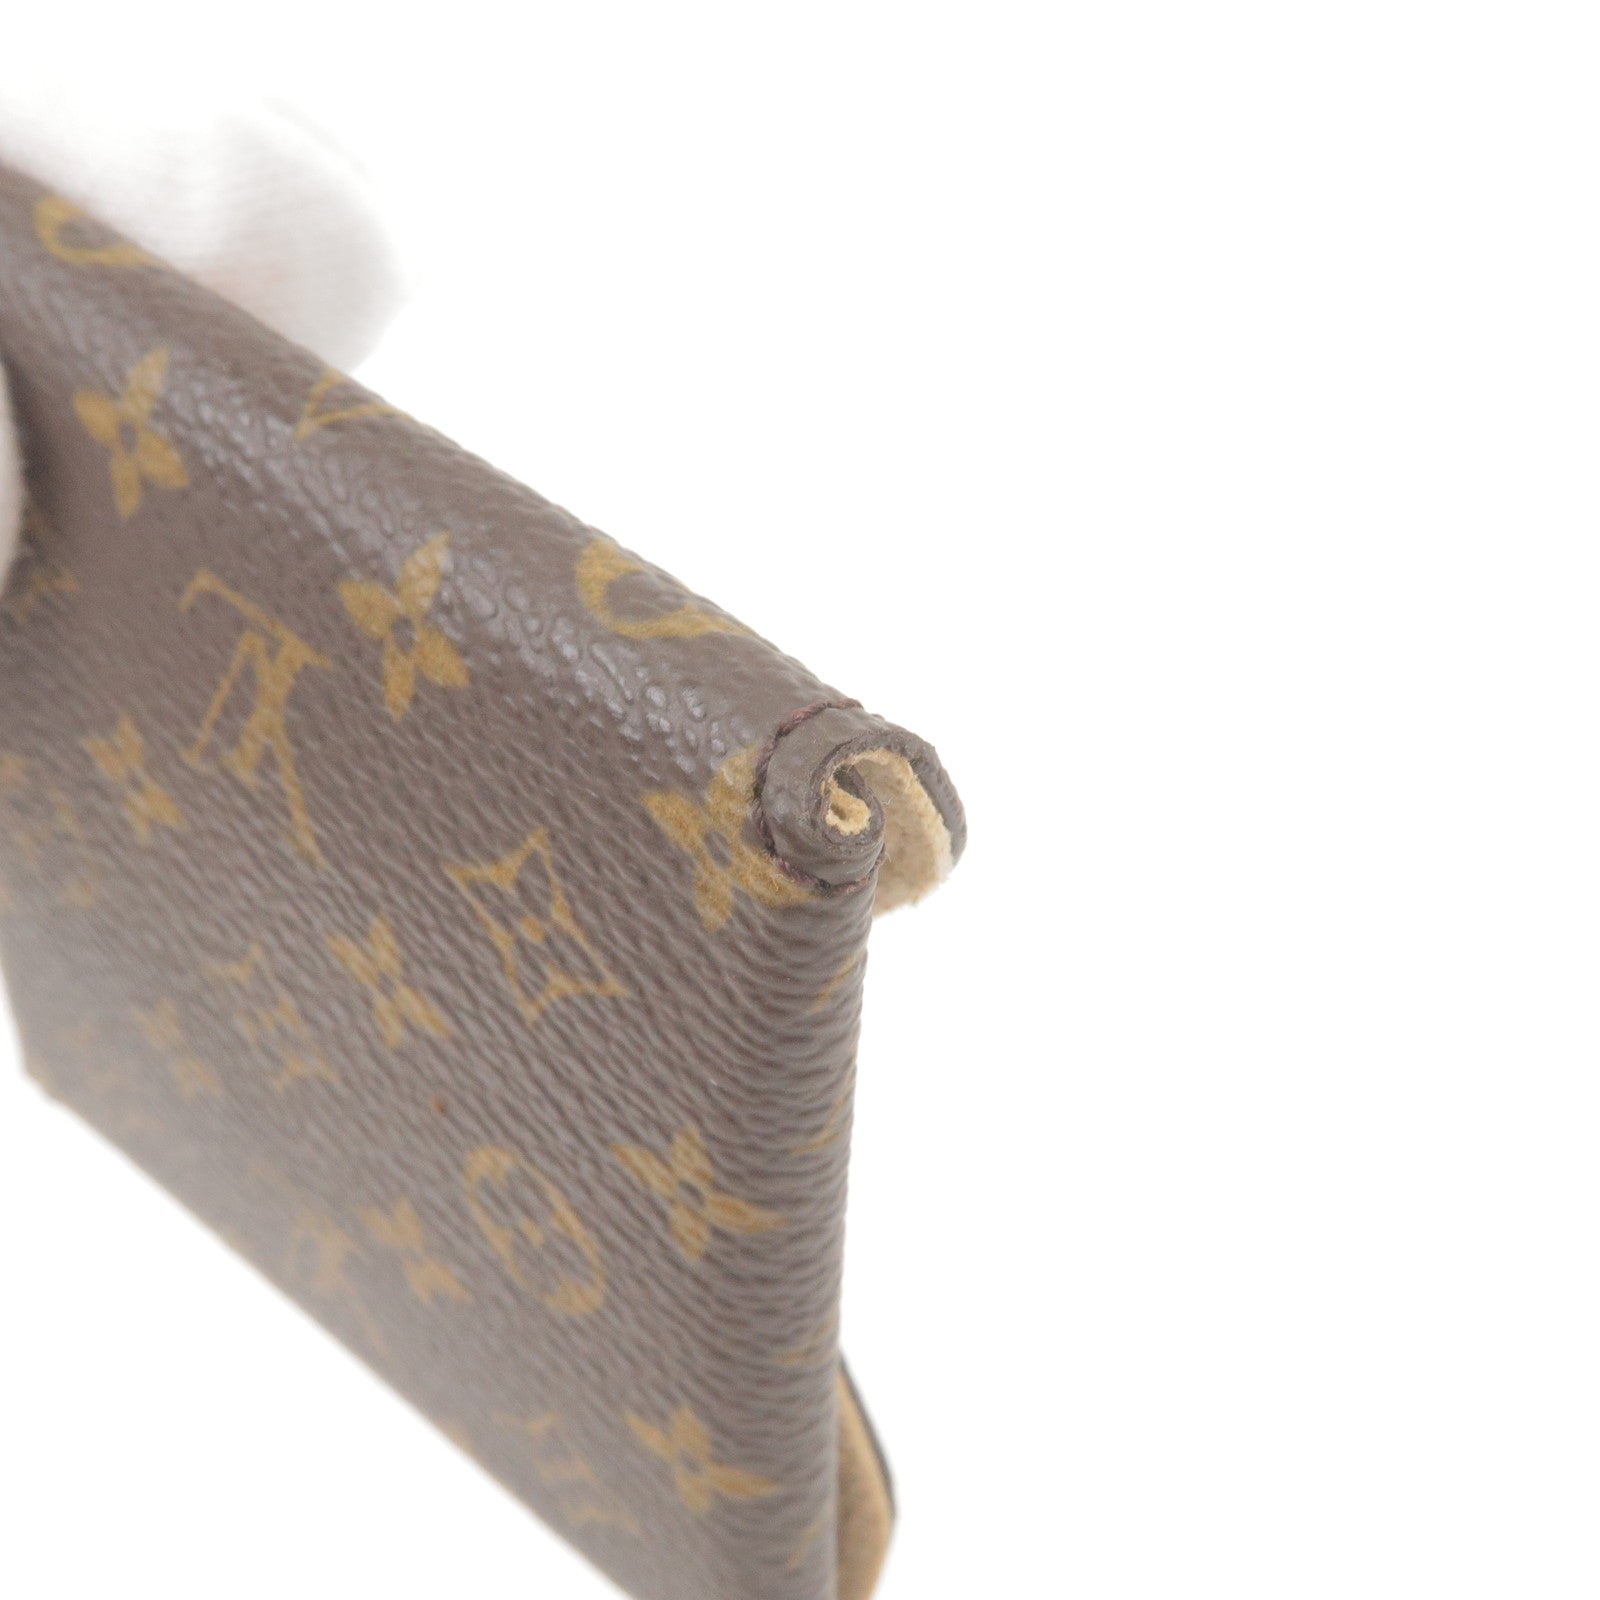 Vintage Louis Vuitton Monogram Earrings Large Gold 5cm